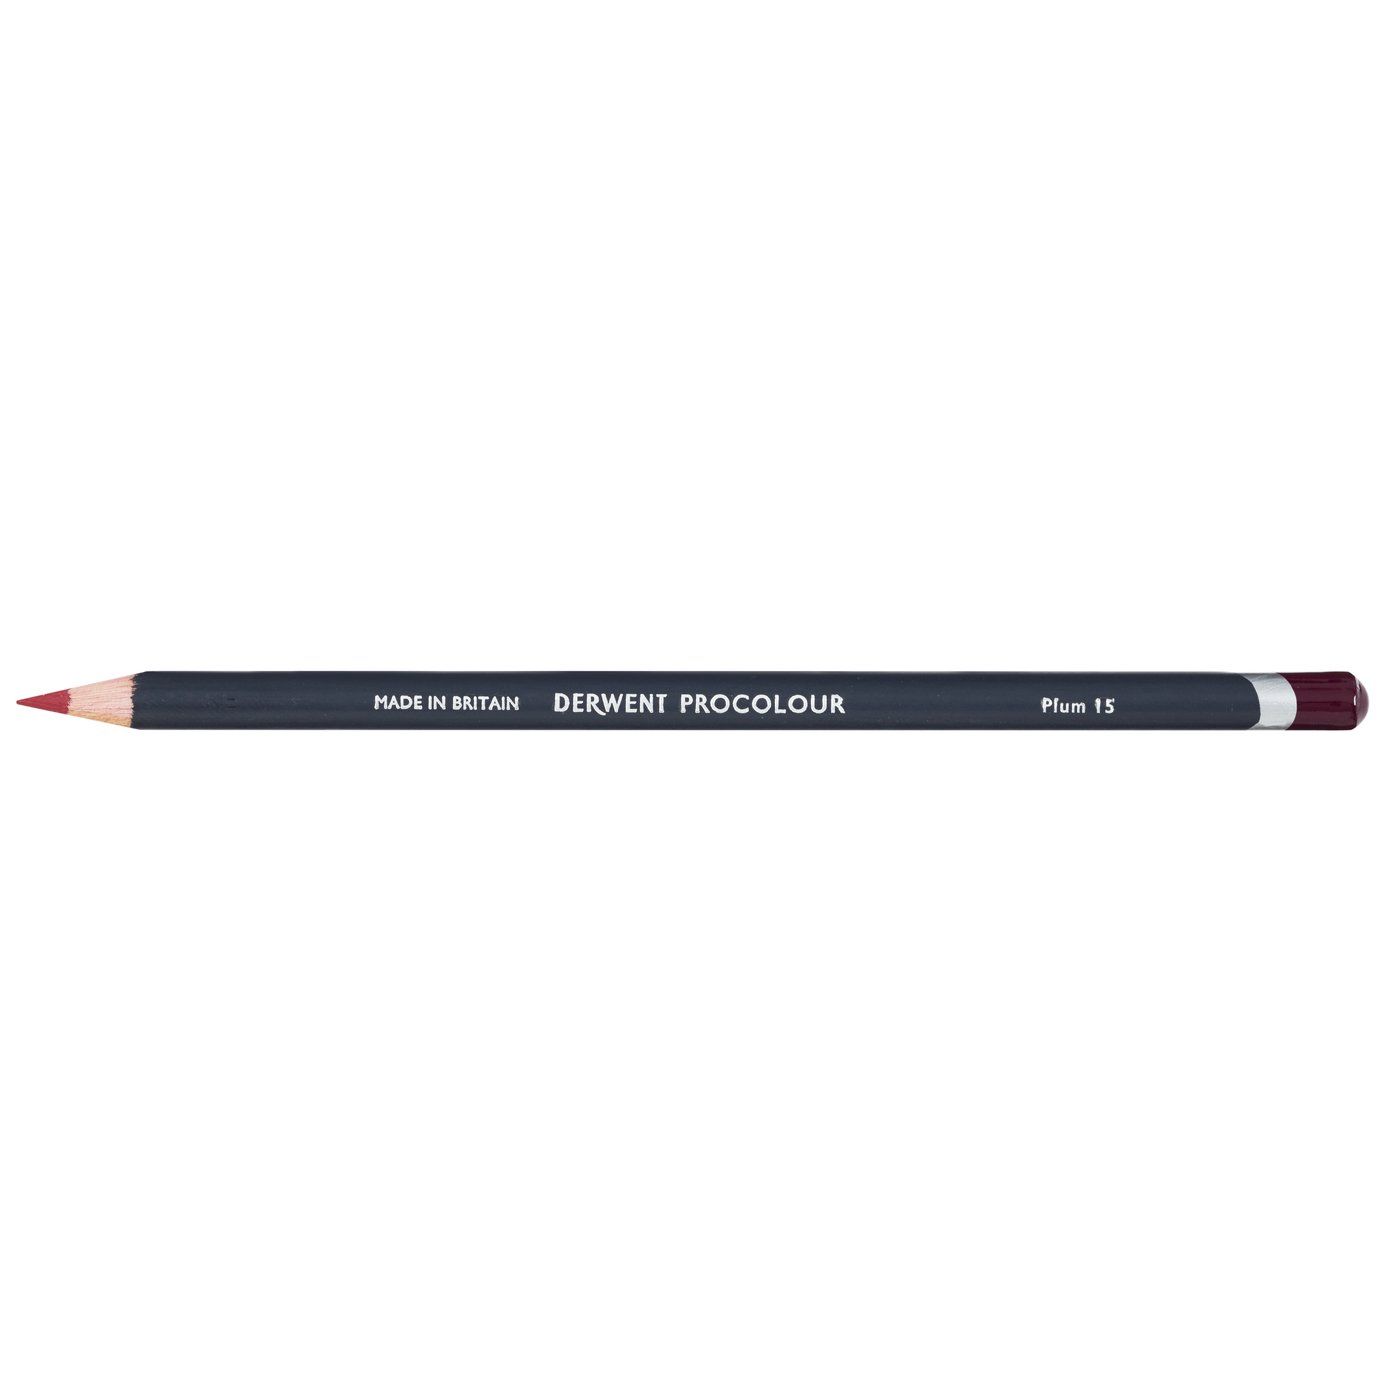 Derwent Procolour Pencil - 15 Plum